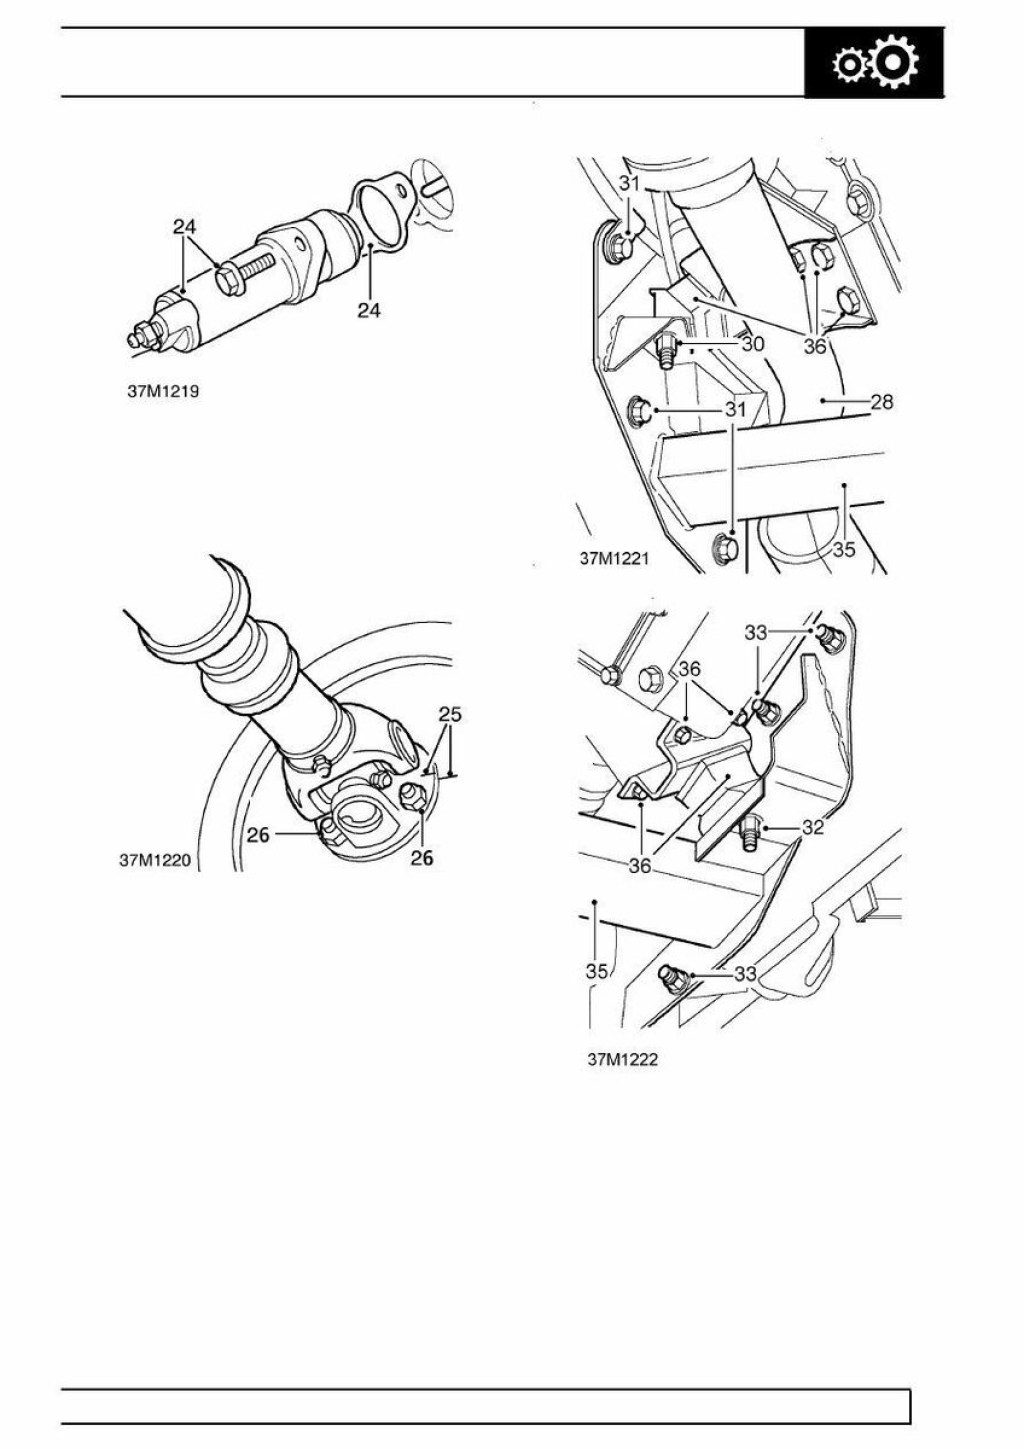 Picture of: Land Rover Defender / Workshop Manual